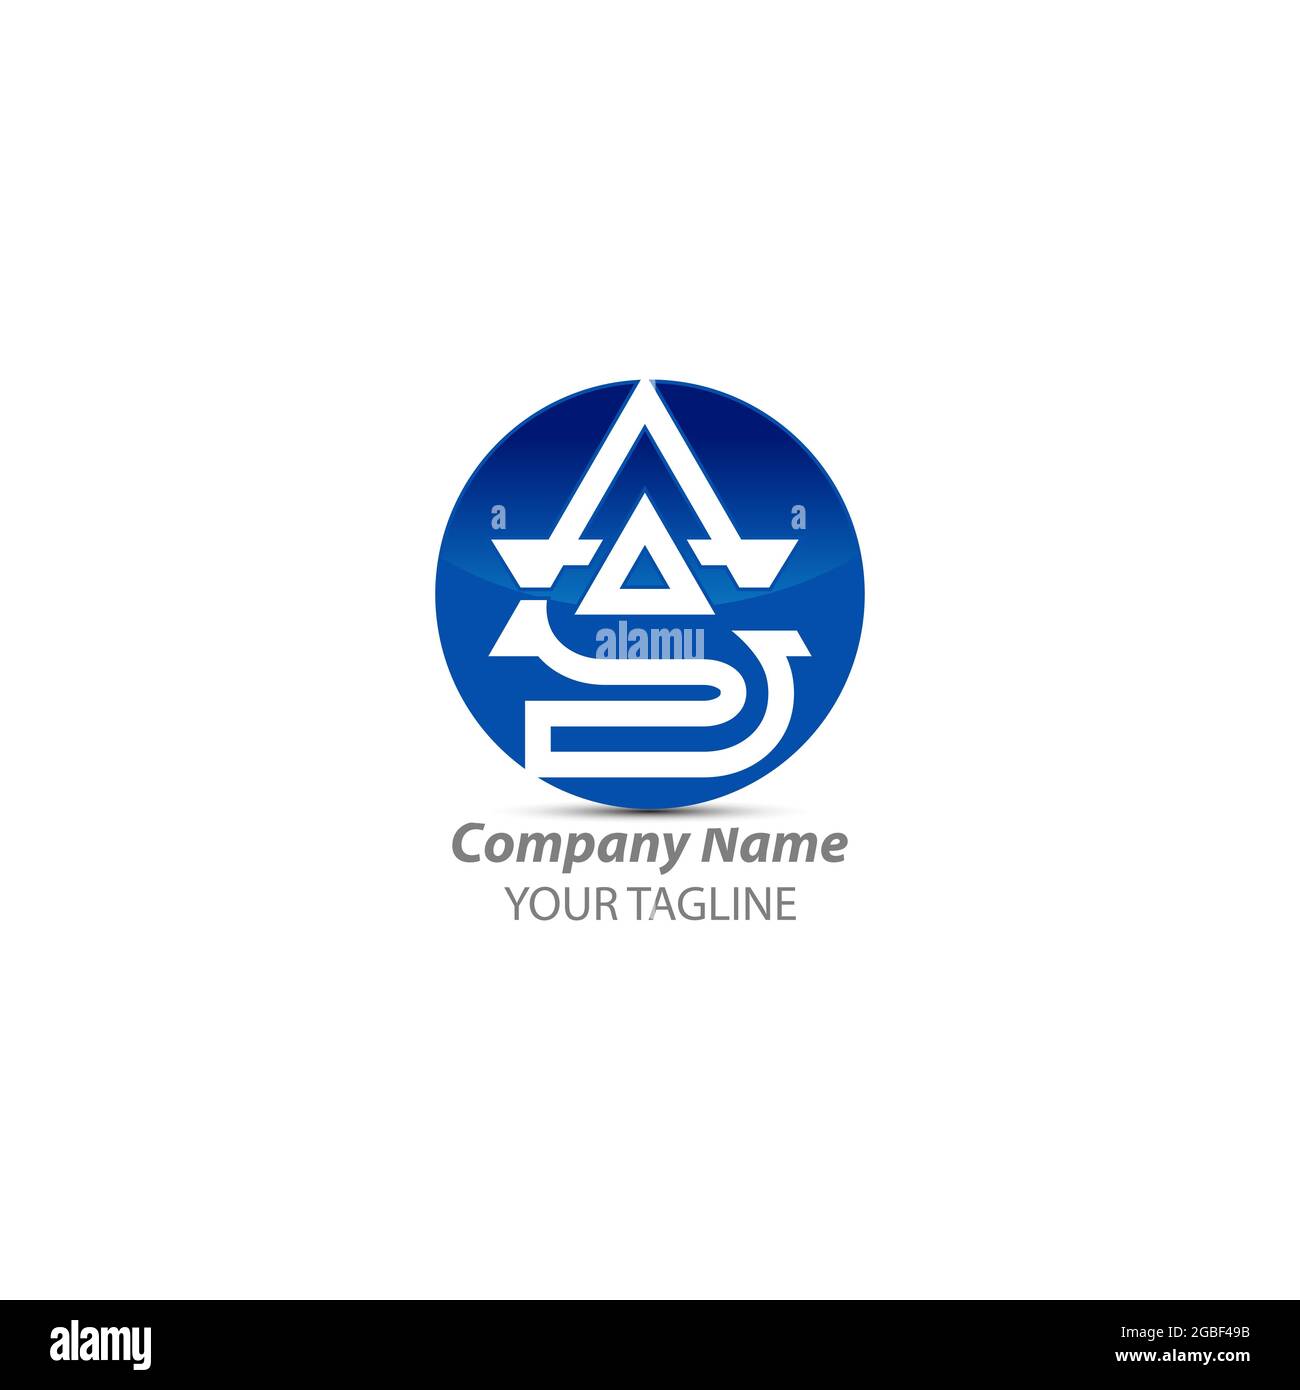 Initial SA monogramma moderno ed elegante design del logo, Professional Letters Vector su sfondo bianco.EPS 10 Illustrazione Vettoriale